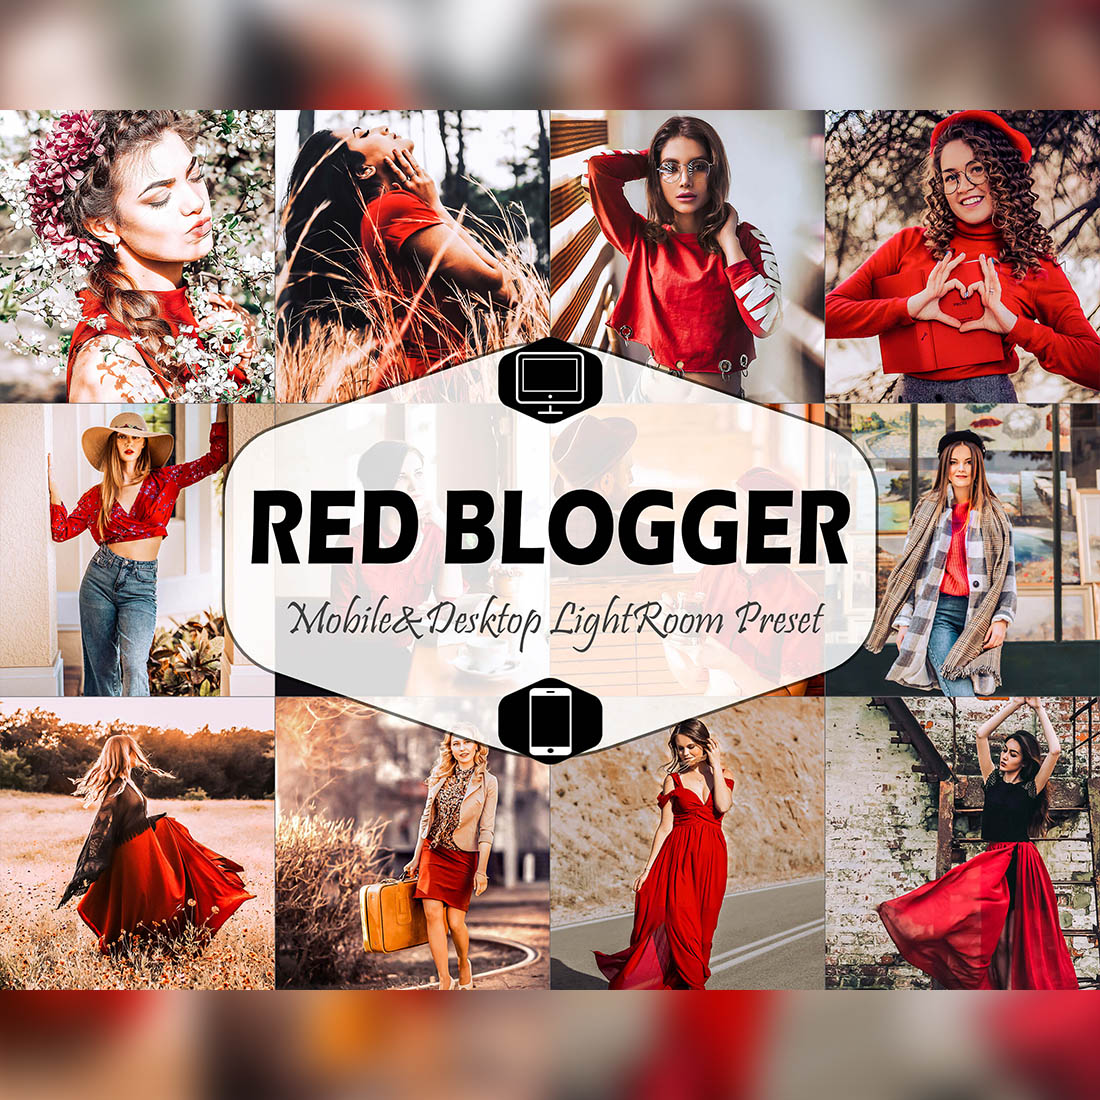 Red Blogger Mobile & Desktop Lightroom Presets, instagram modern LR preset, trendy filter , best DNG travel lifestyle fashion theme cover image.